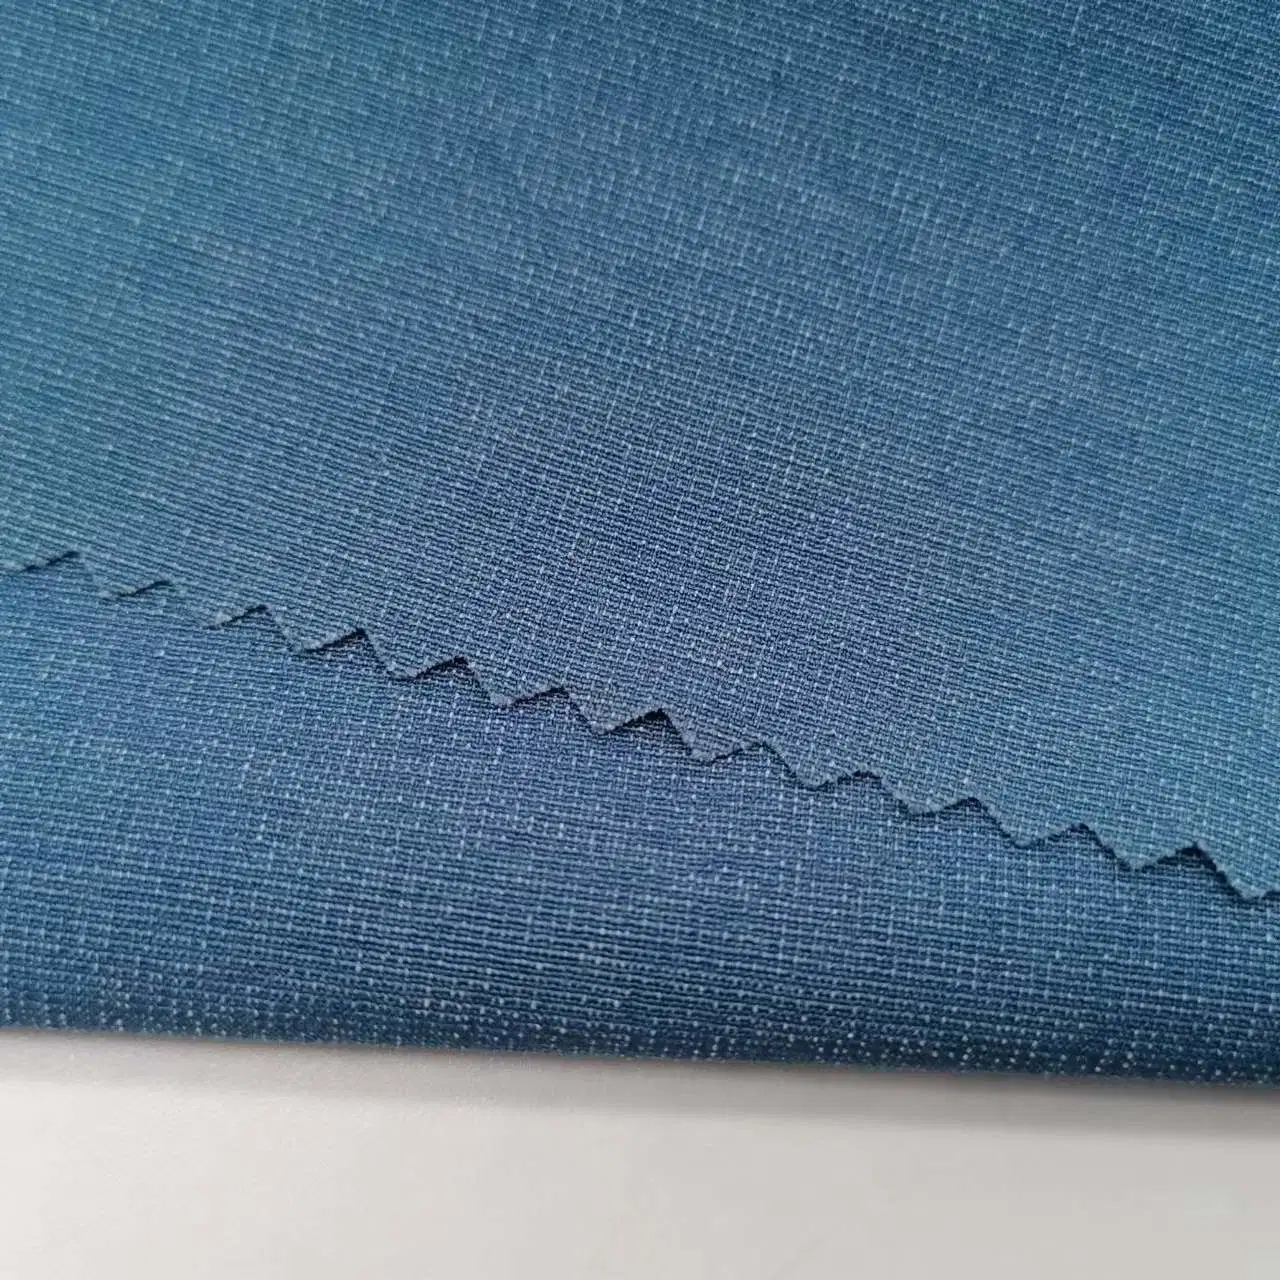 Dry-Fit Ruga Resistentes Colos de dois tons trecho de 4 vias de nylon de 65% 22% 13% poliéster Spandex Tecidos para atender a vestir calças Shorts Spotswear roupa de cama